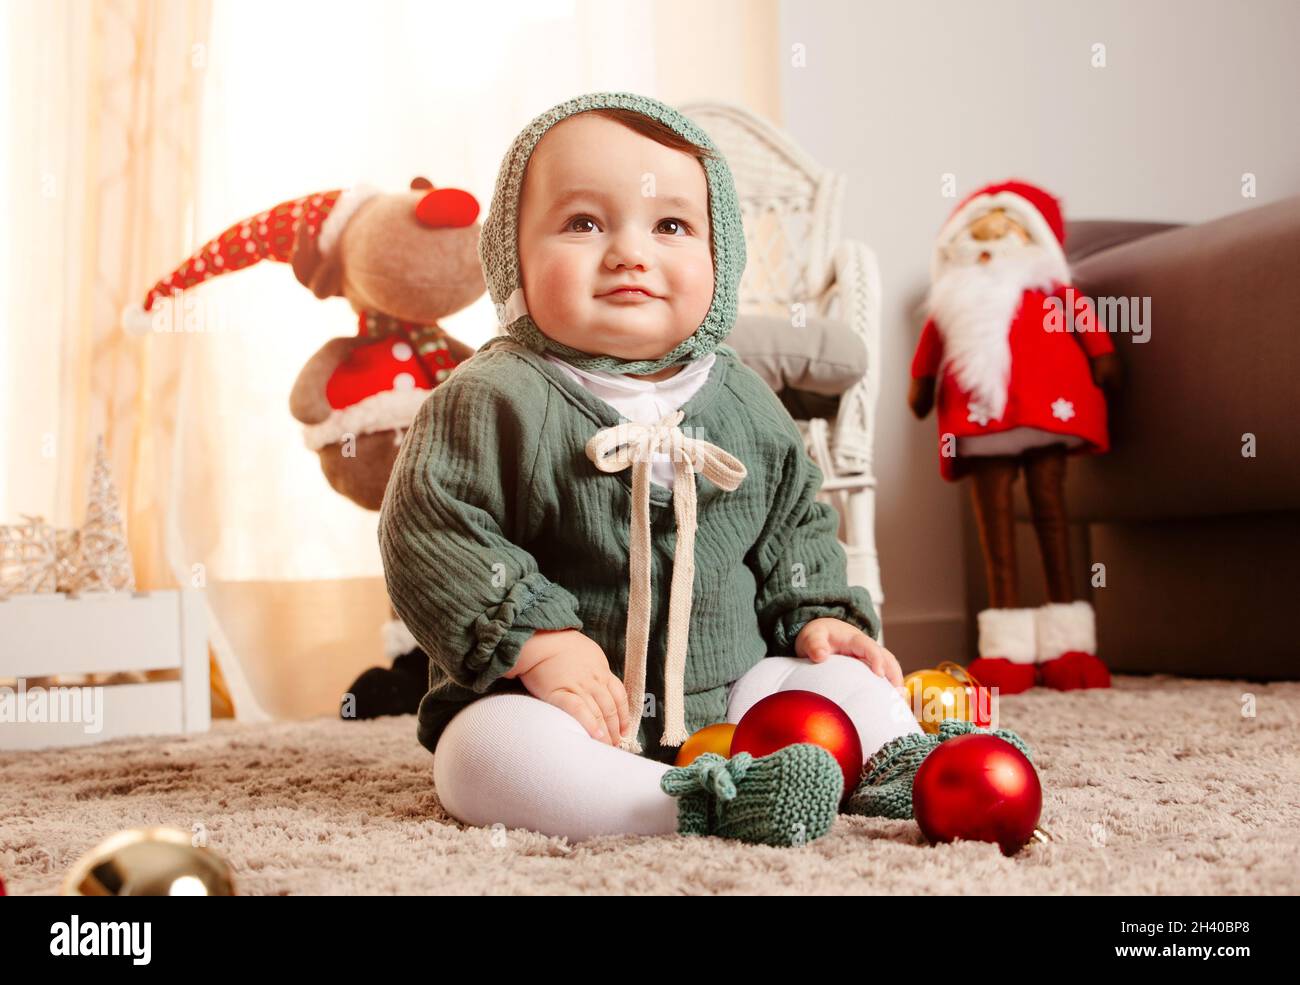 Niedliches Baby mit weihnachtskleidung und Ornamenten. Glückliches Kind  sitzt in der Nähe von weihnachtsbällen und lächelt. Frohe Weihnachten und  Winter-Weihnachtszeit-Konzept Stockfotografie - Alamy